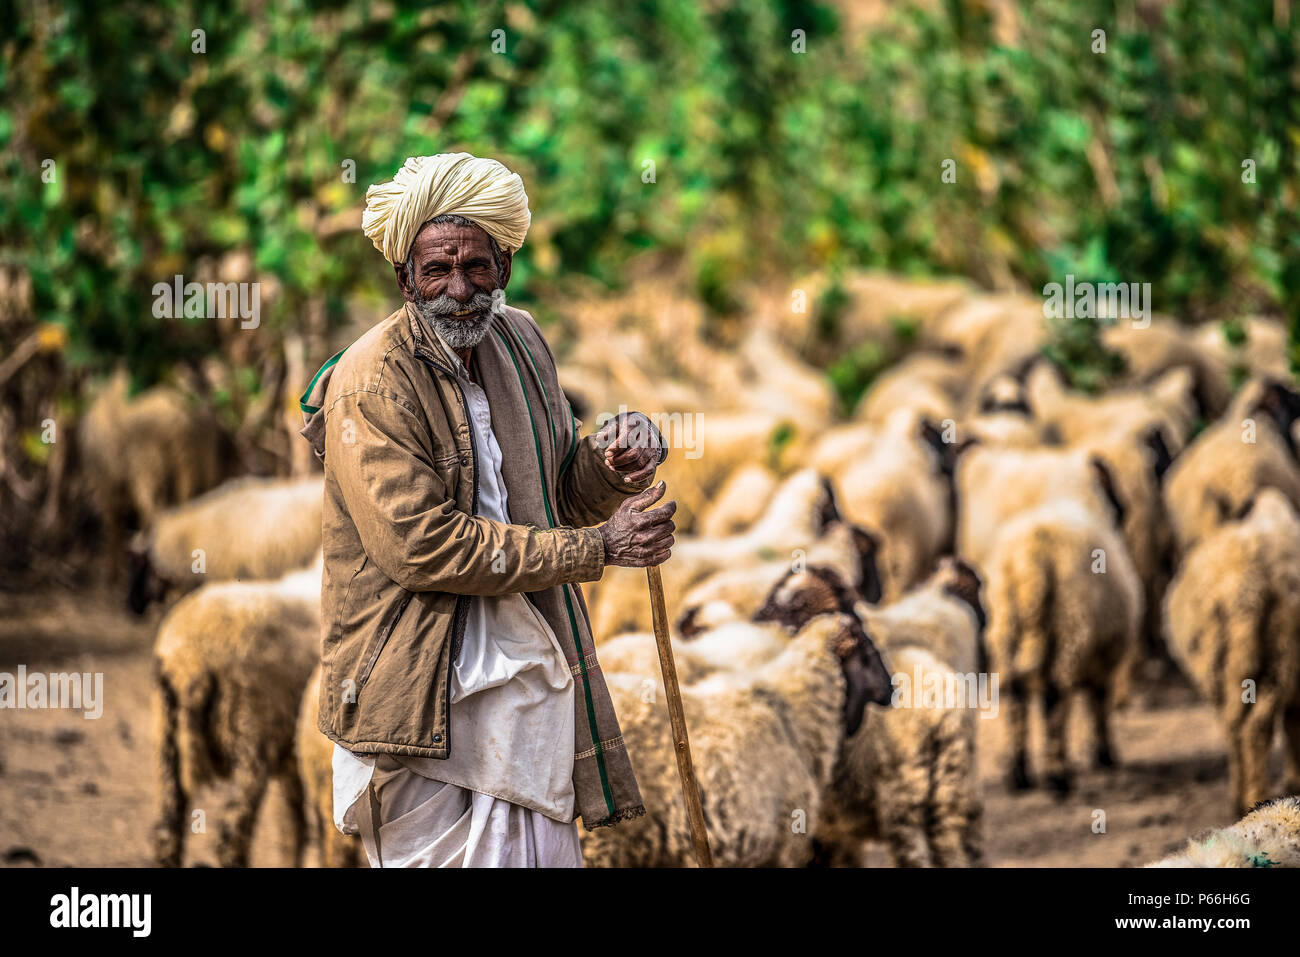 Desierto de Thar DE RAJASTHAN INDIA un pastor con su rebaño Foto de stock